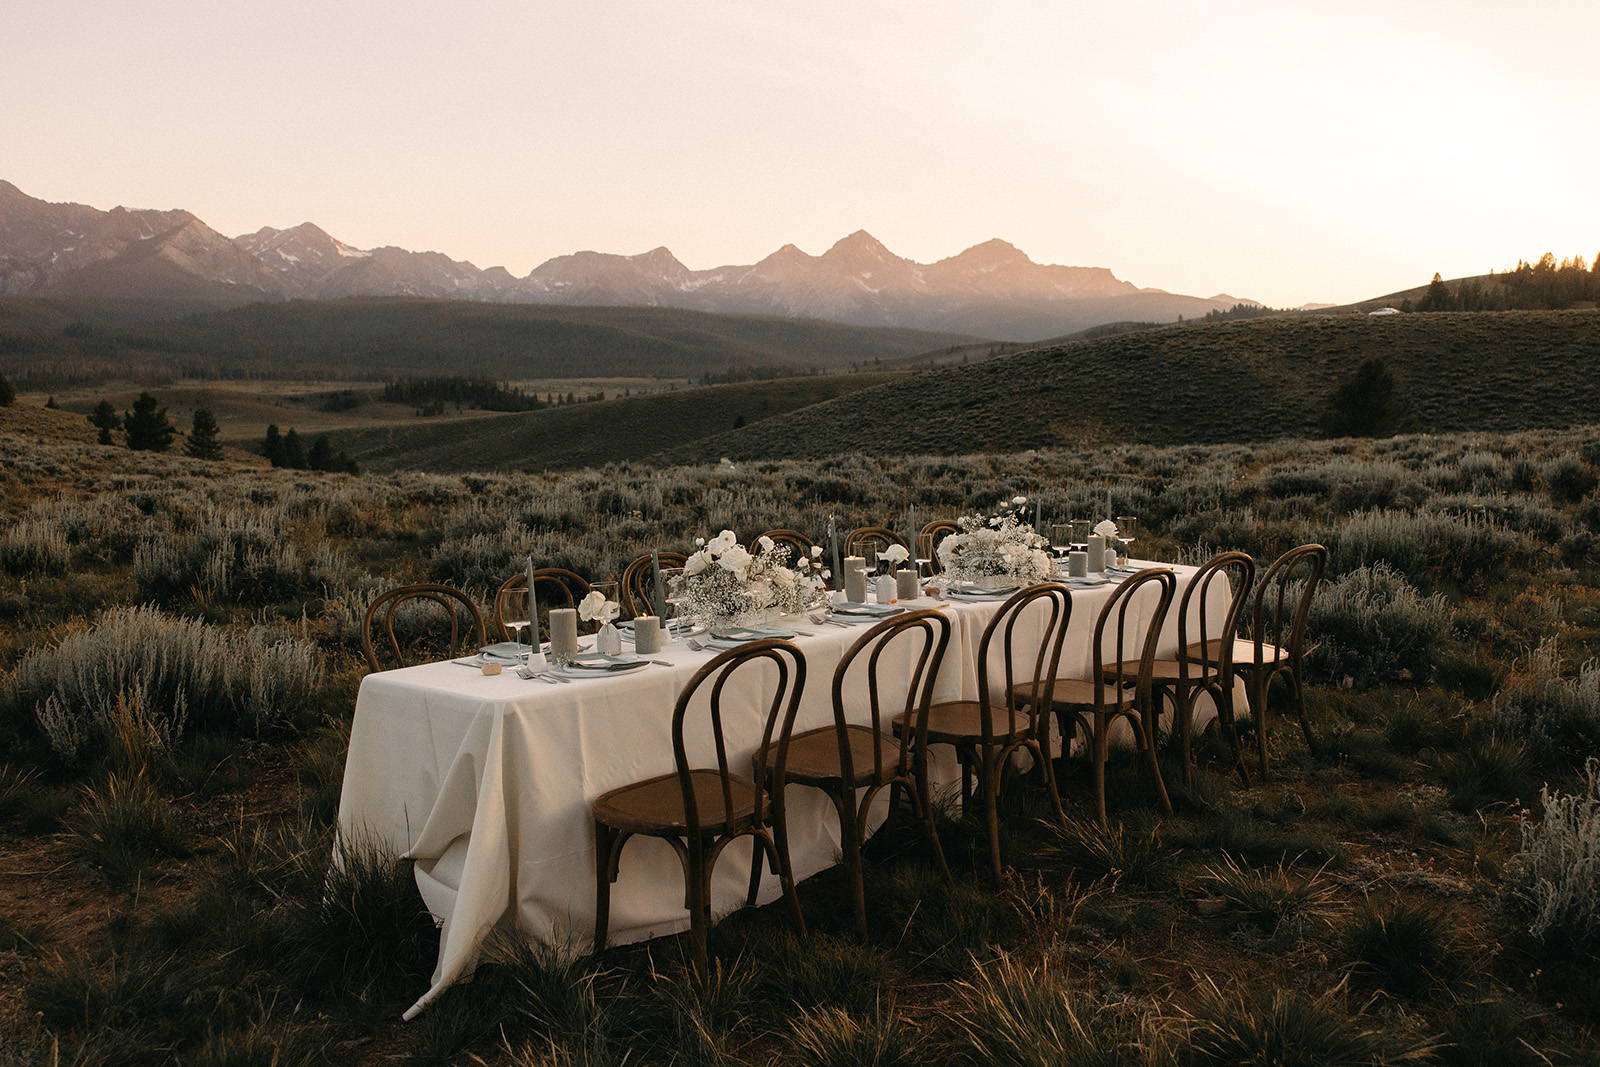 Wedding table setup among the mountains